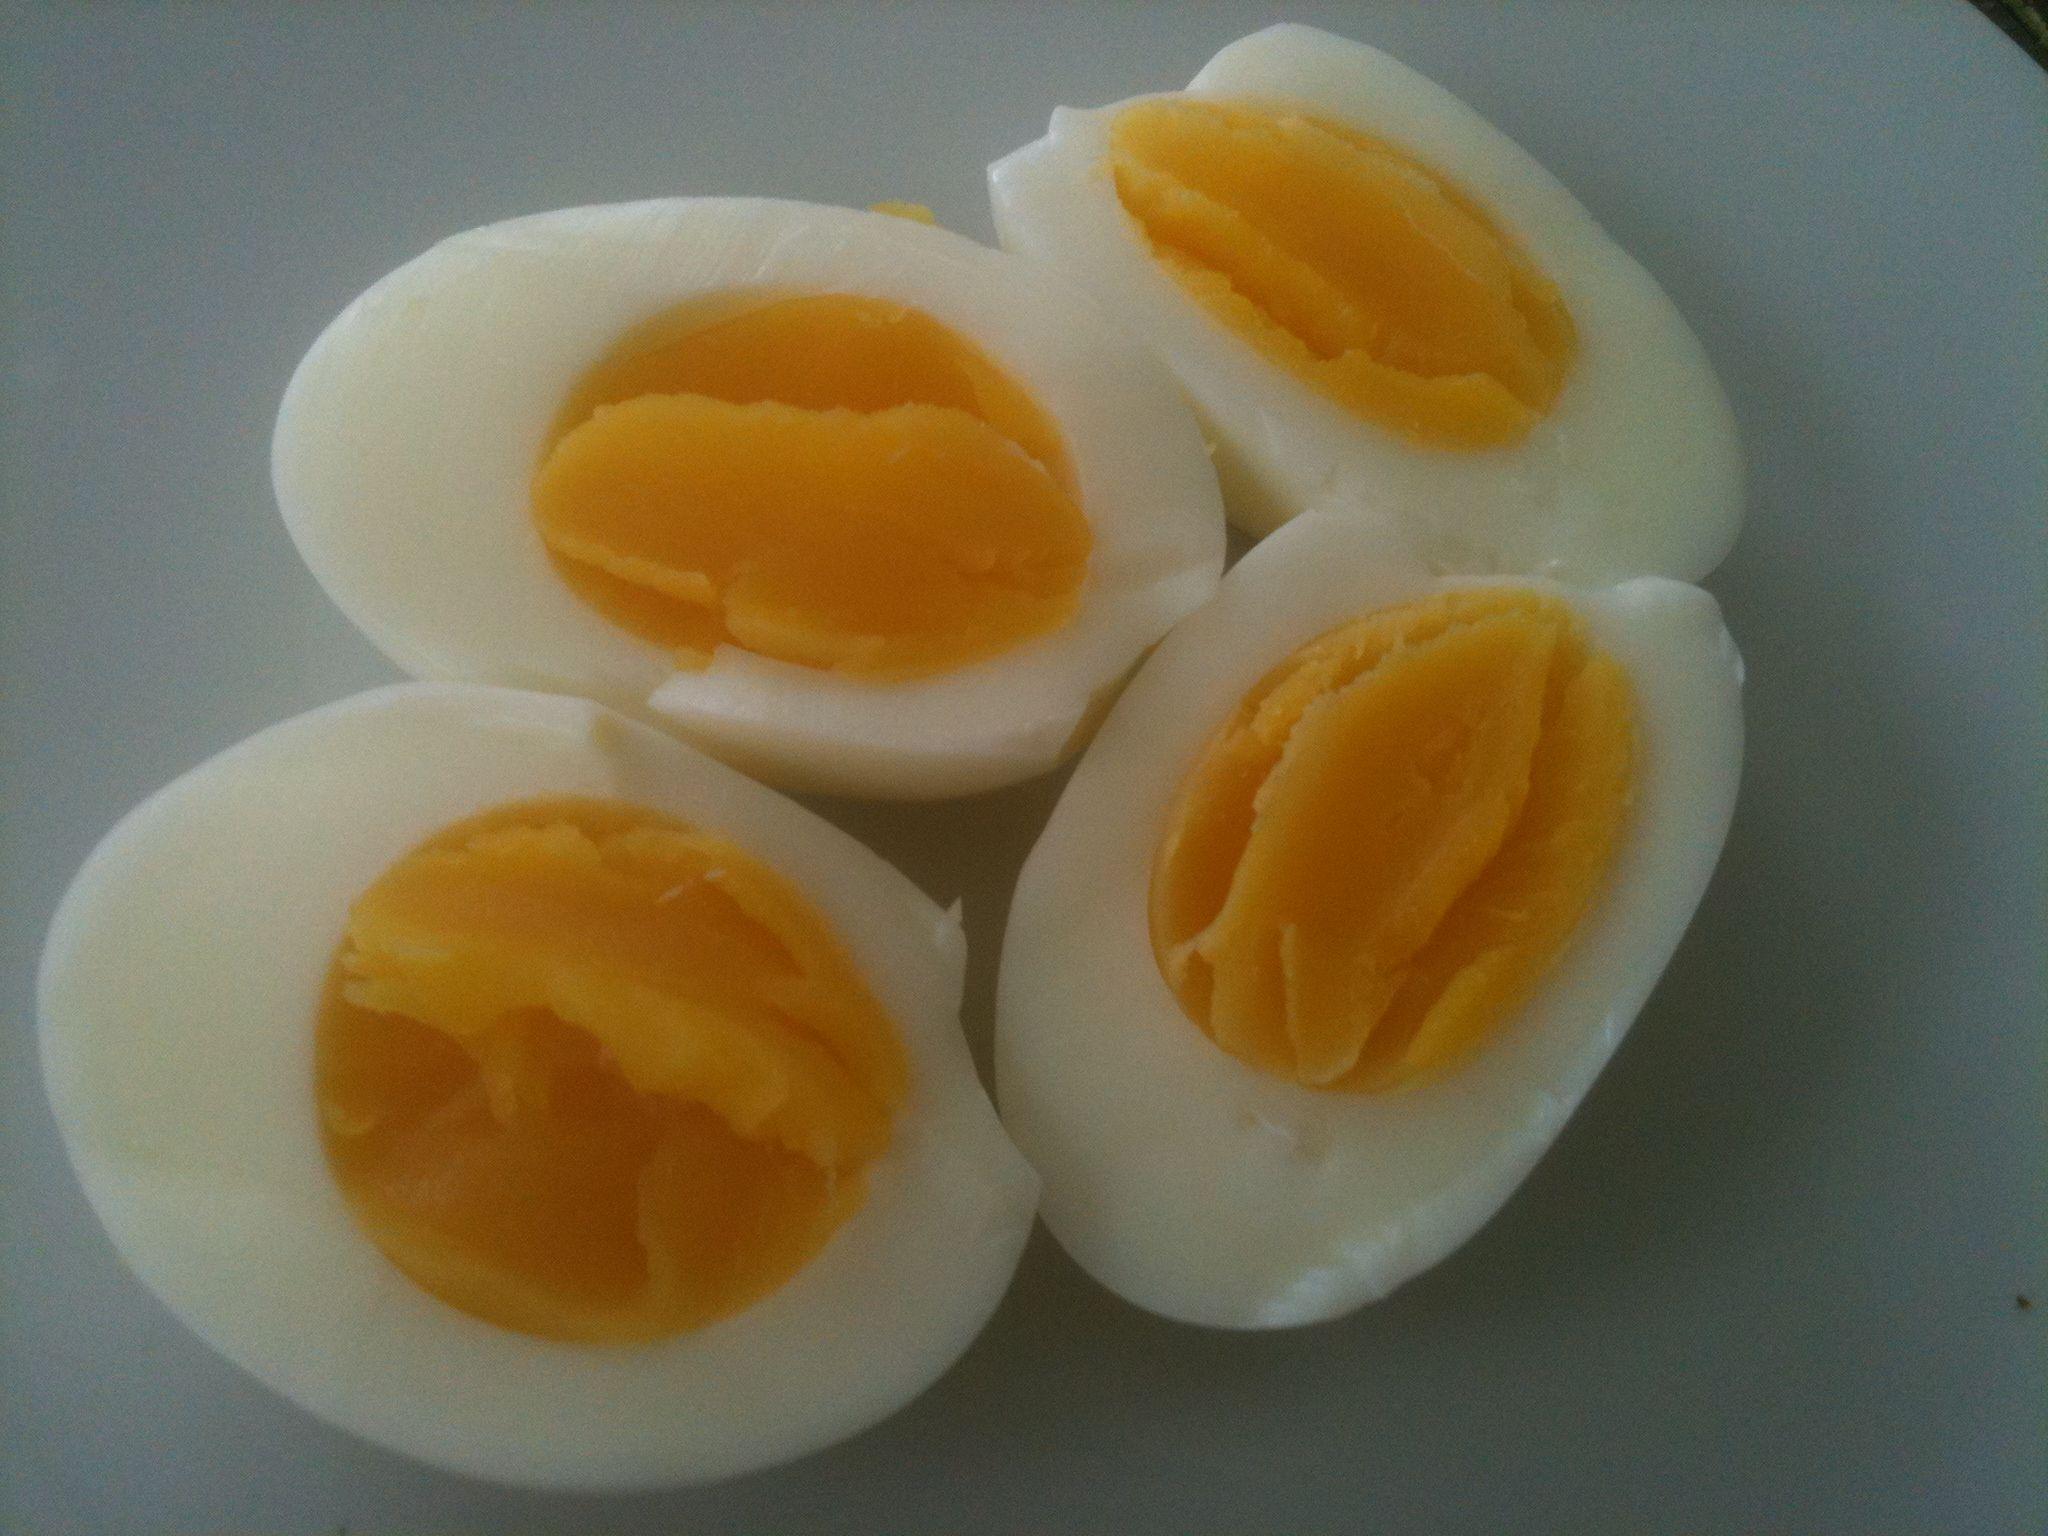 boiled eggs. NotThatMartha's Blog